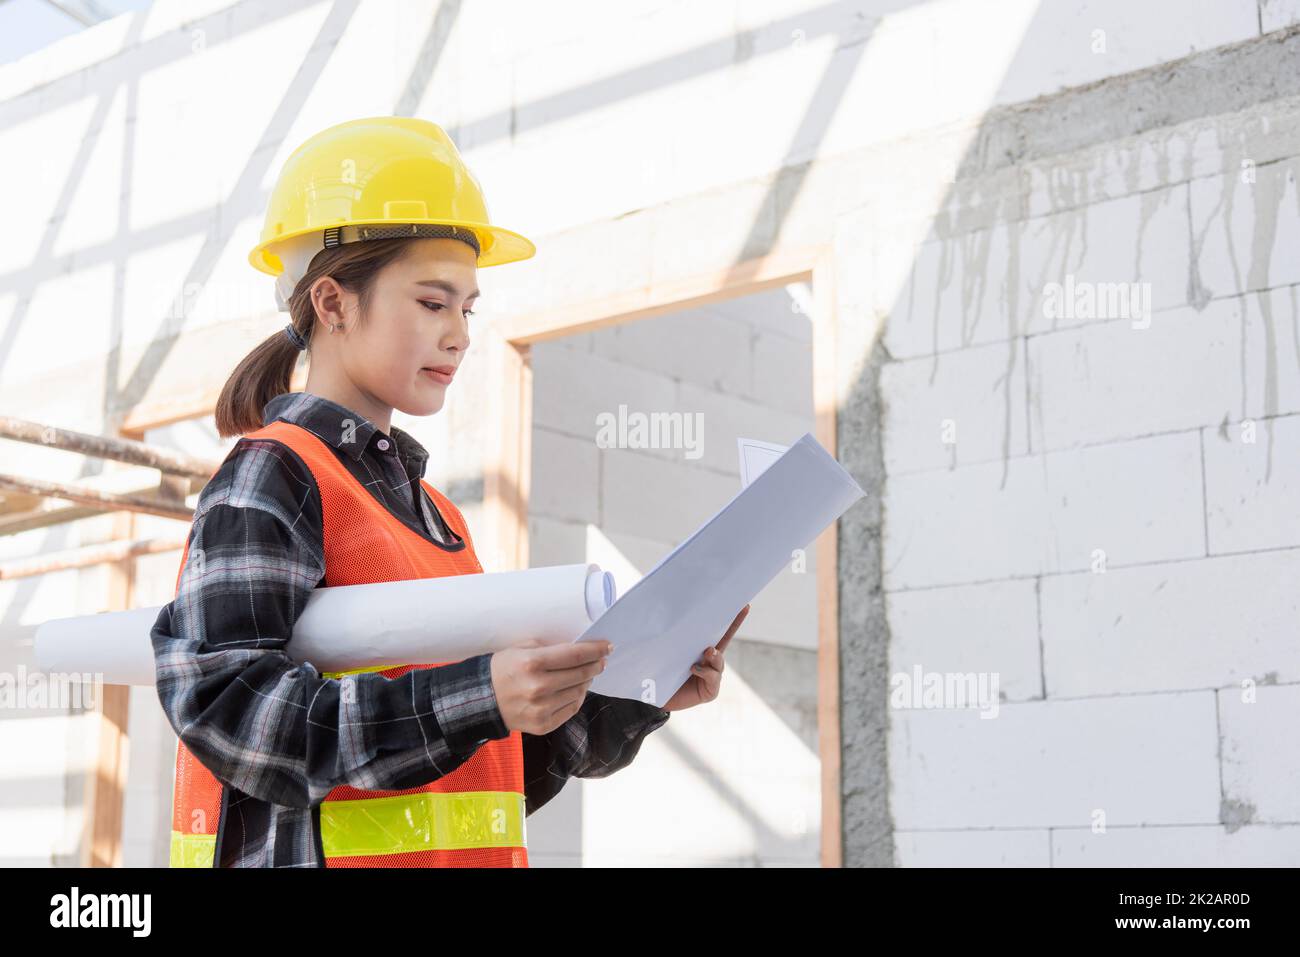 Asiatische Architektenarbeiterin, die Baustellenbaupläne auf der Baustelle hält Stockfoto